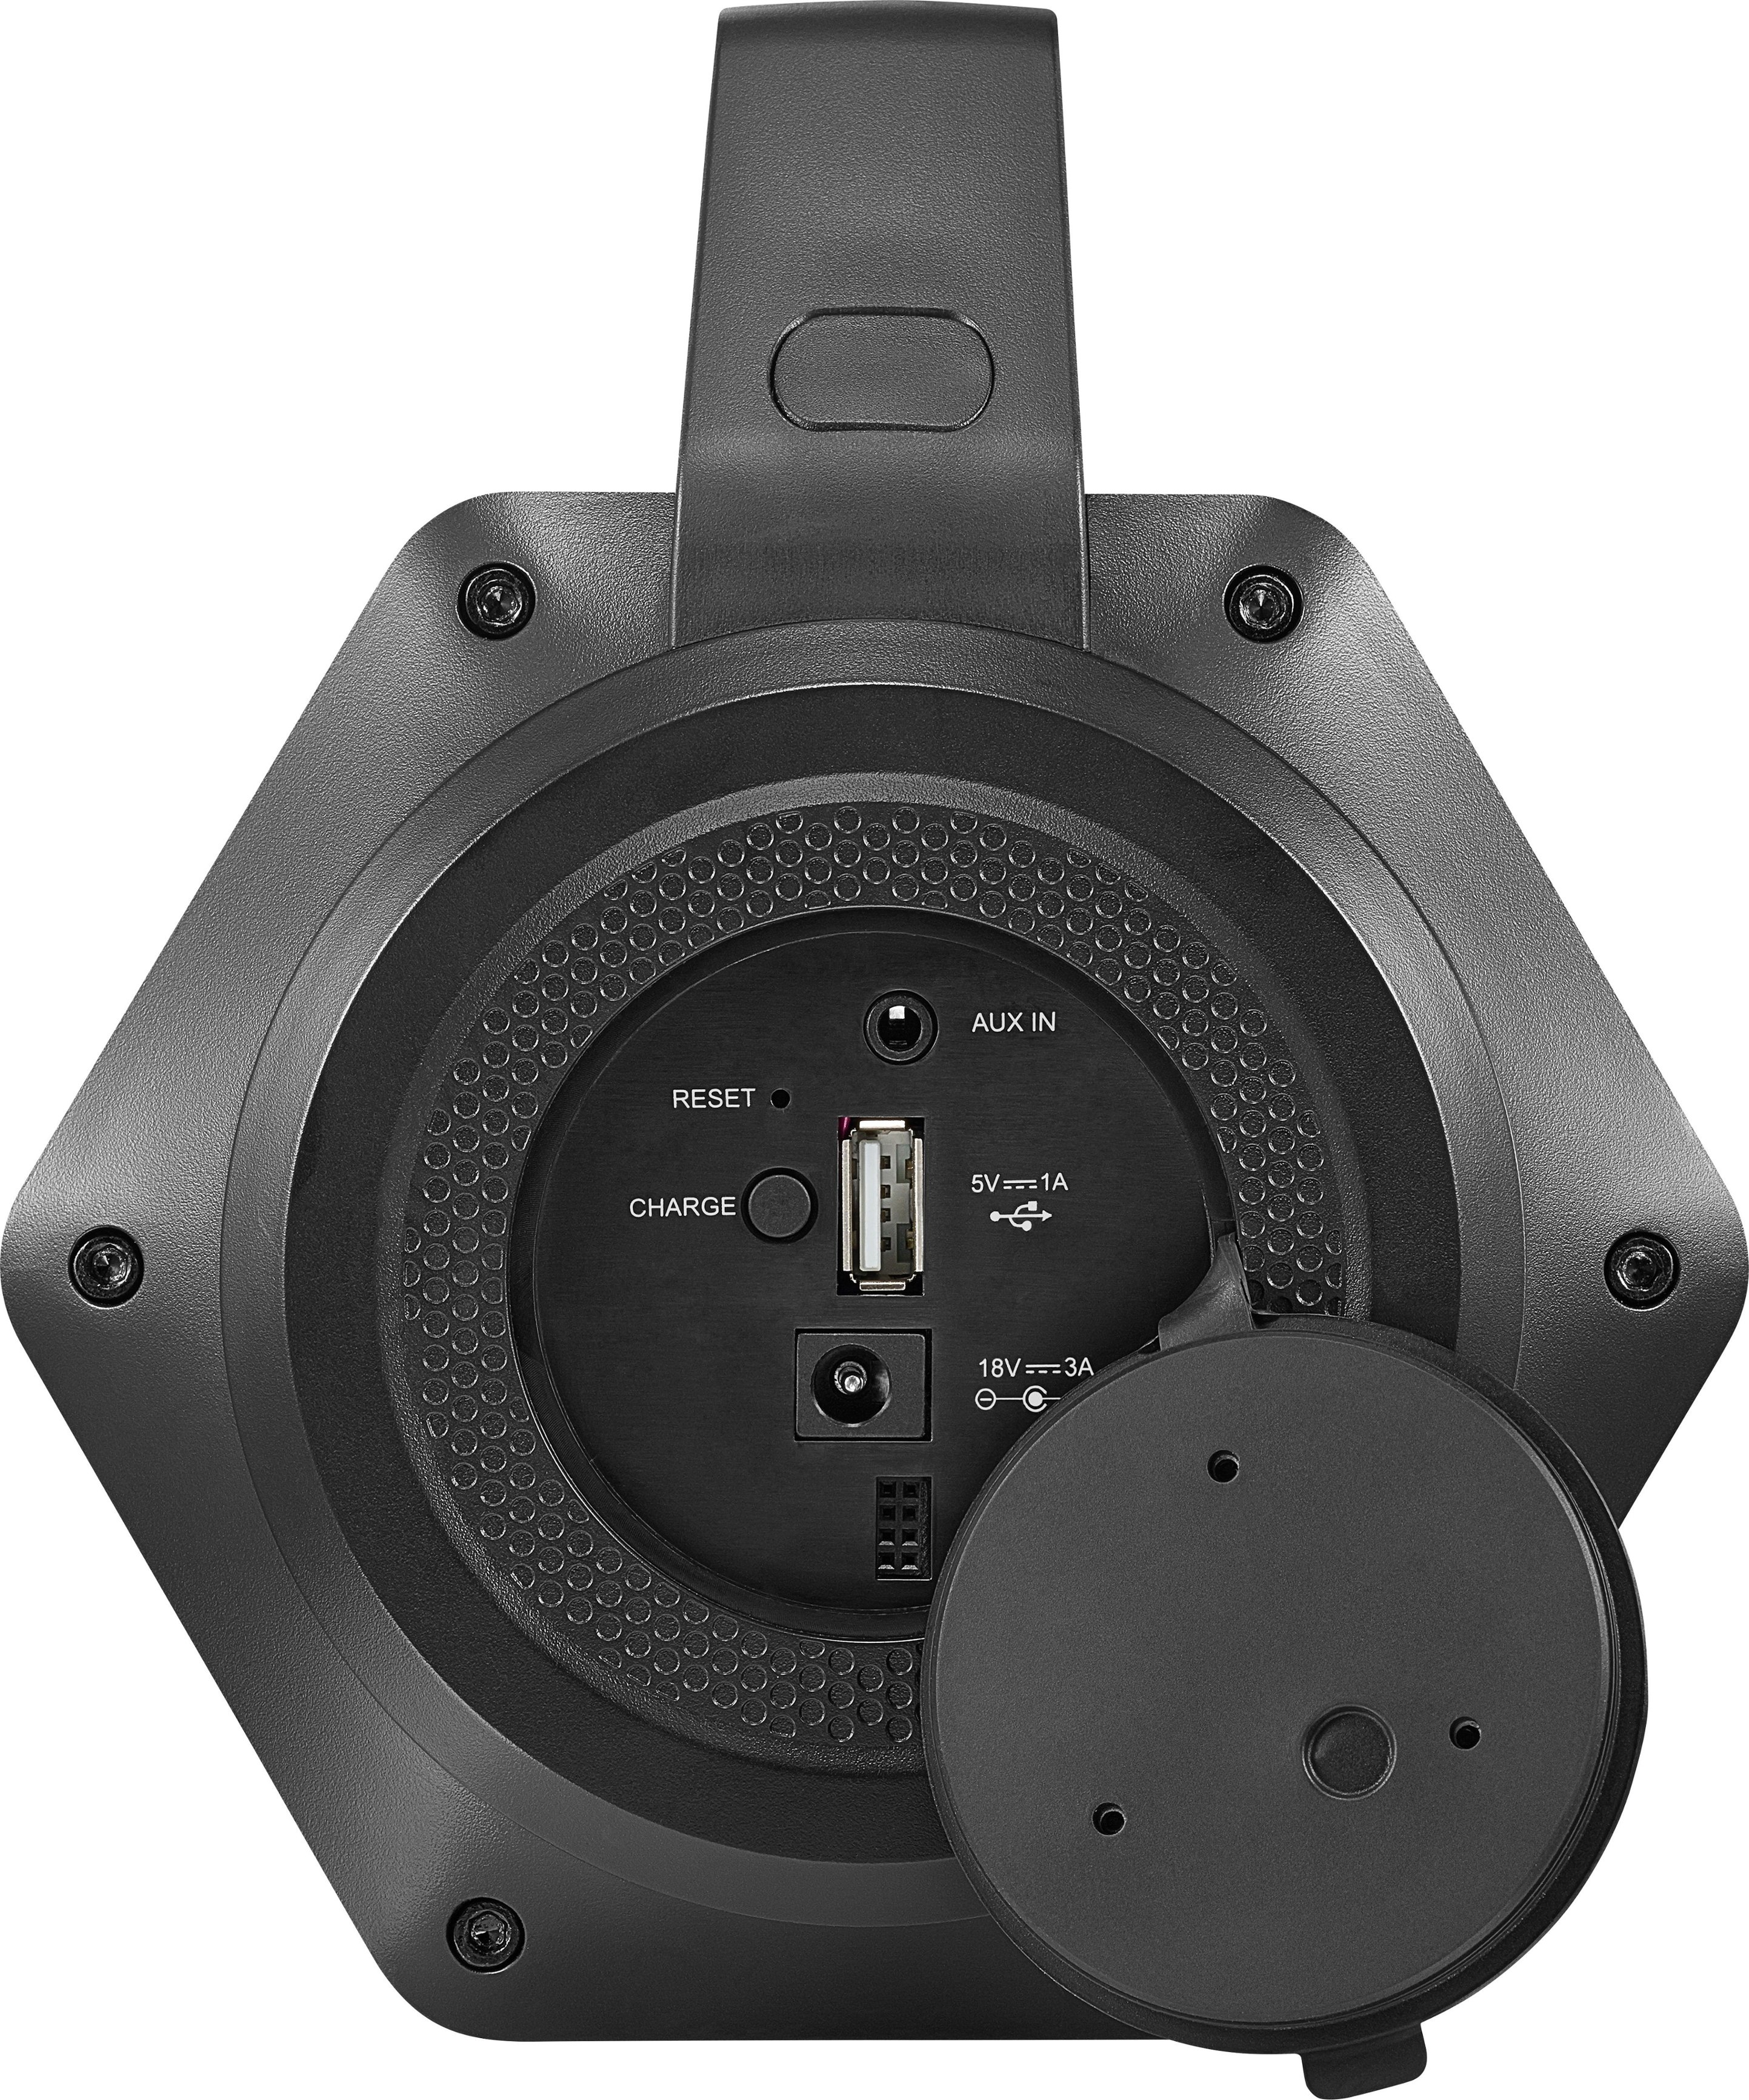 insignia waterproof bluetooth speaker